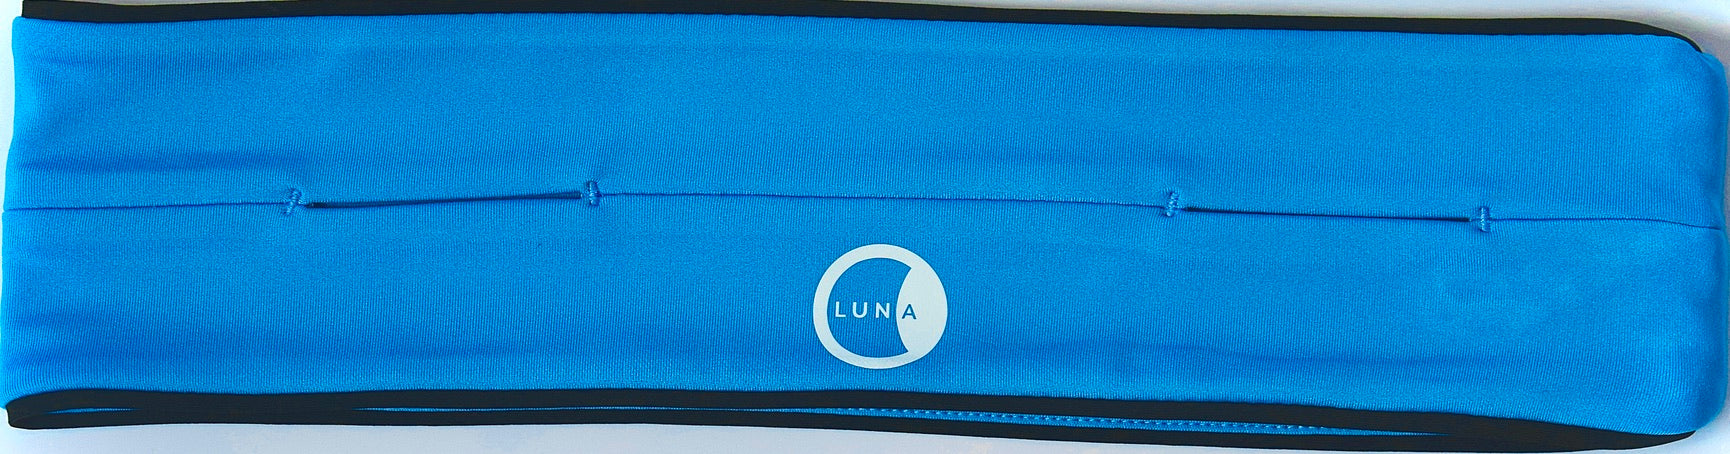 Blue Lunabands lunabelt running fitness waist flip belt 